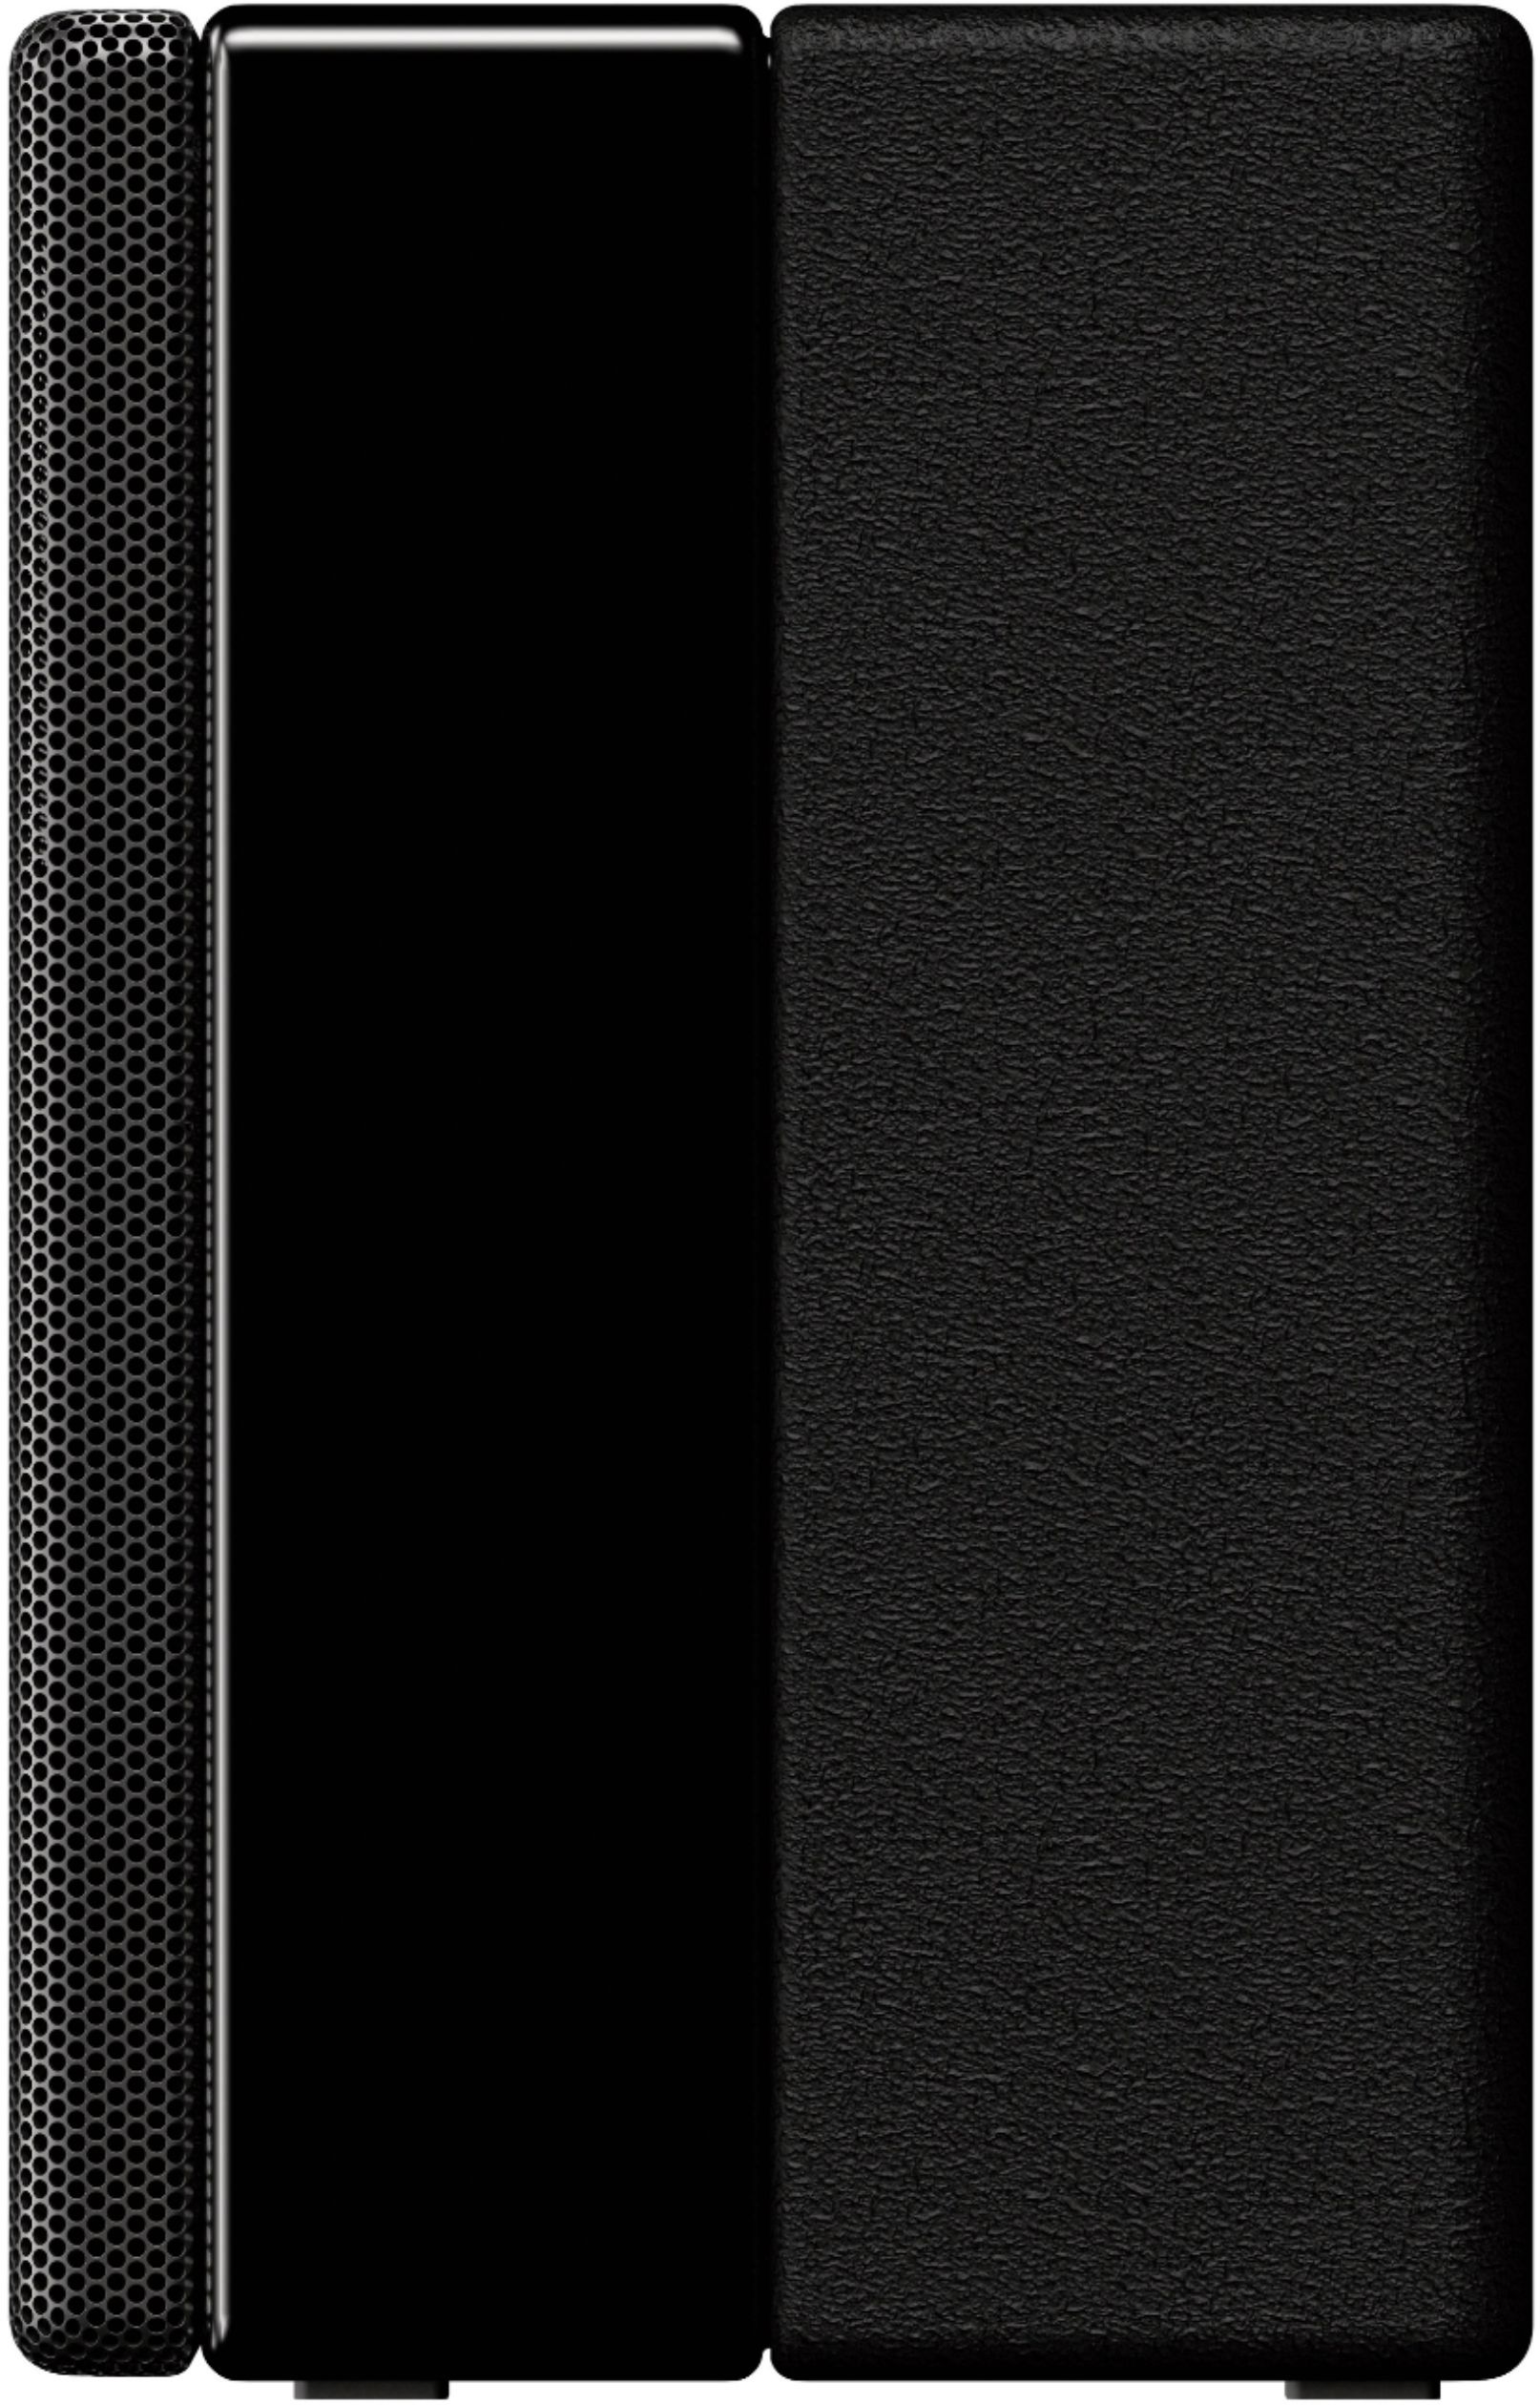 Best Buy: Sony Wireless Rear Channel Speakers (Pair) Black SAZ9R